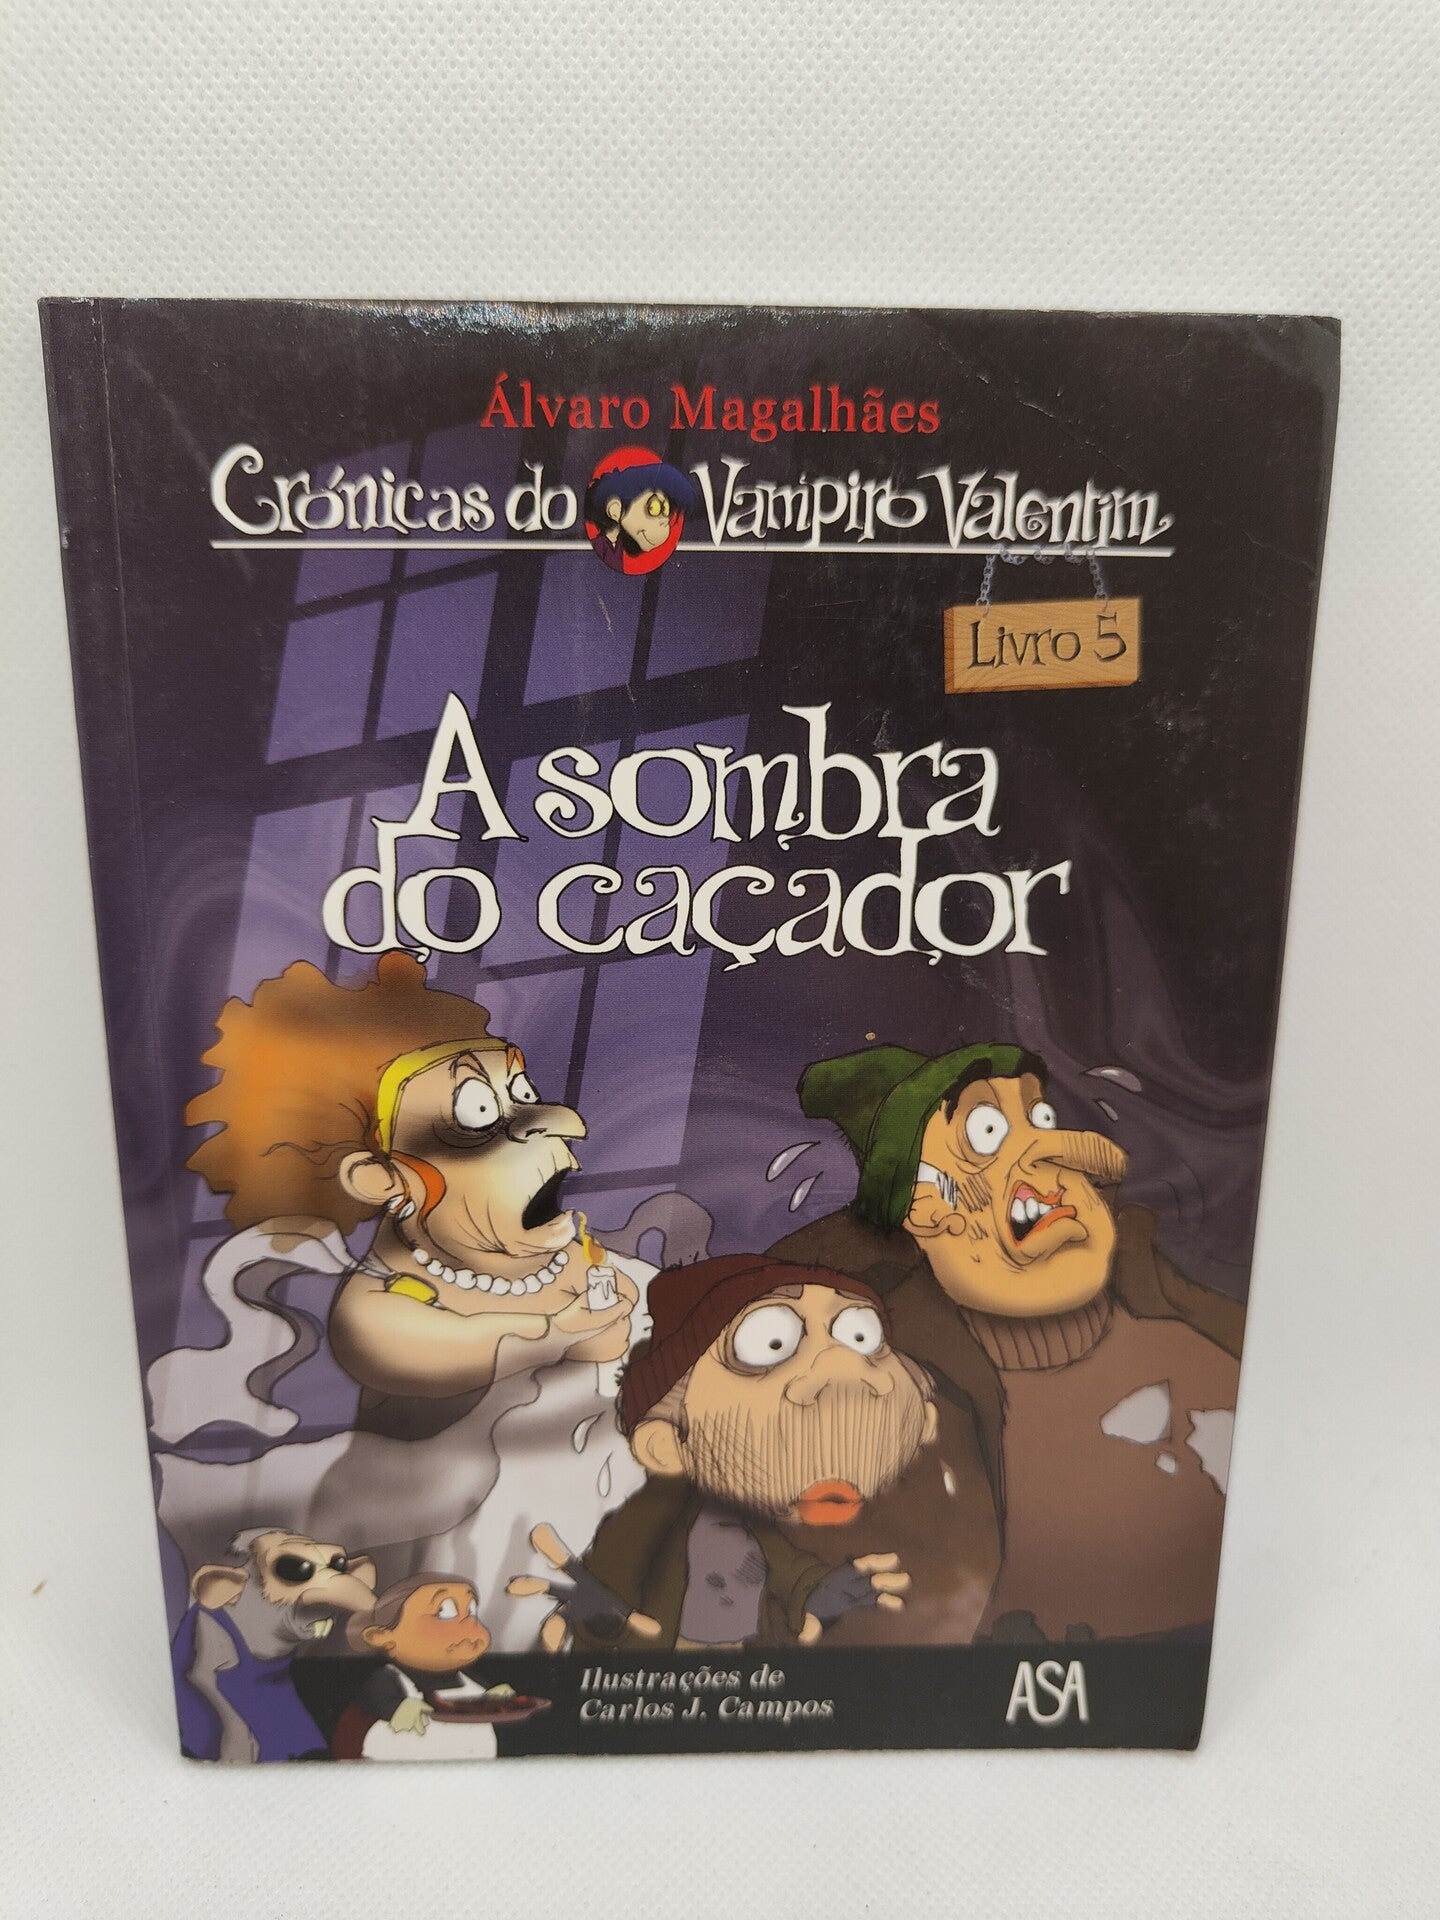 A Sombra do Caçador! Livro 5 de Carlos J. Campos e Álvaro Magalhães - USADO